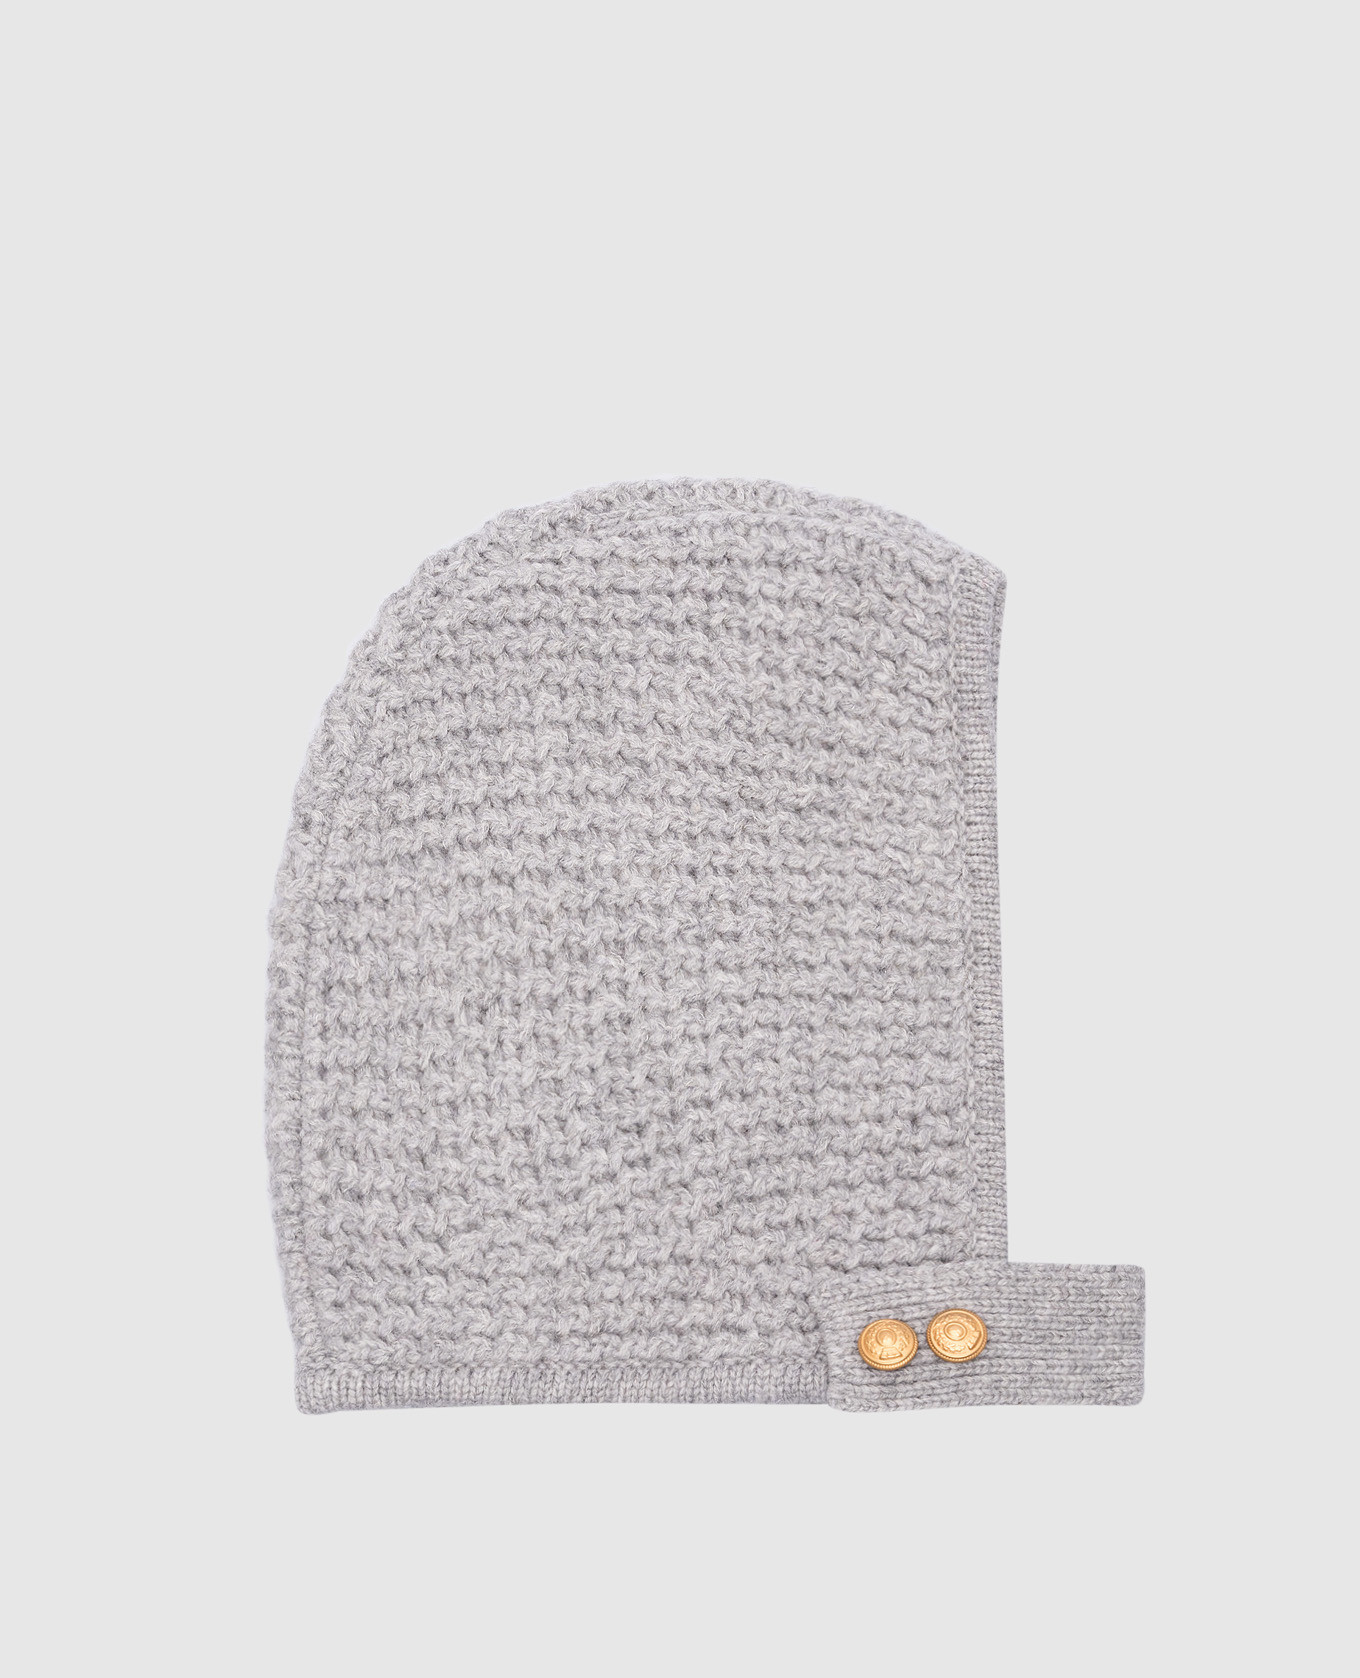 Gray wool cap